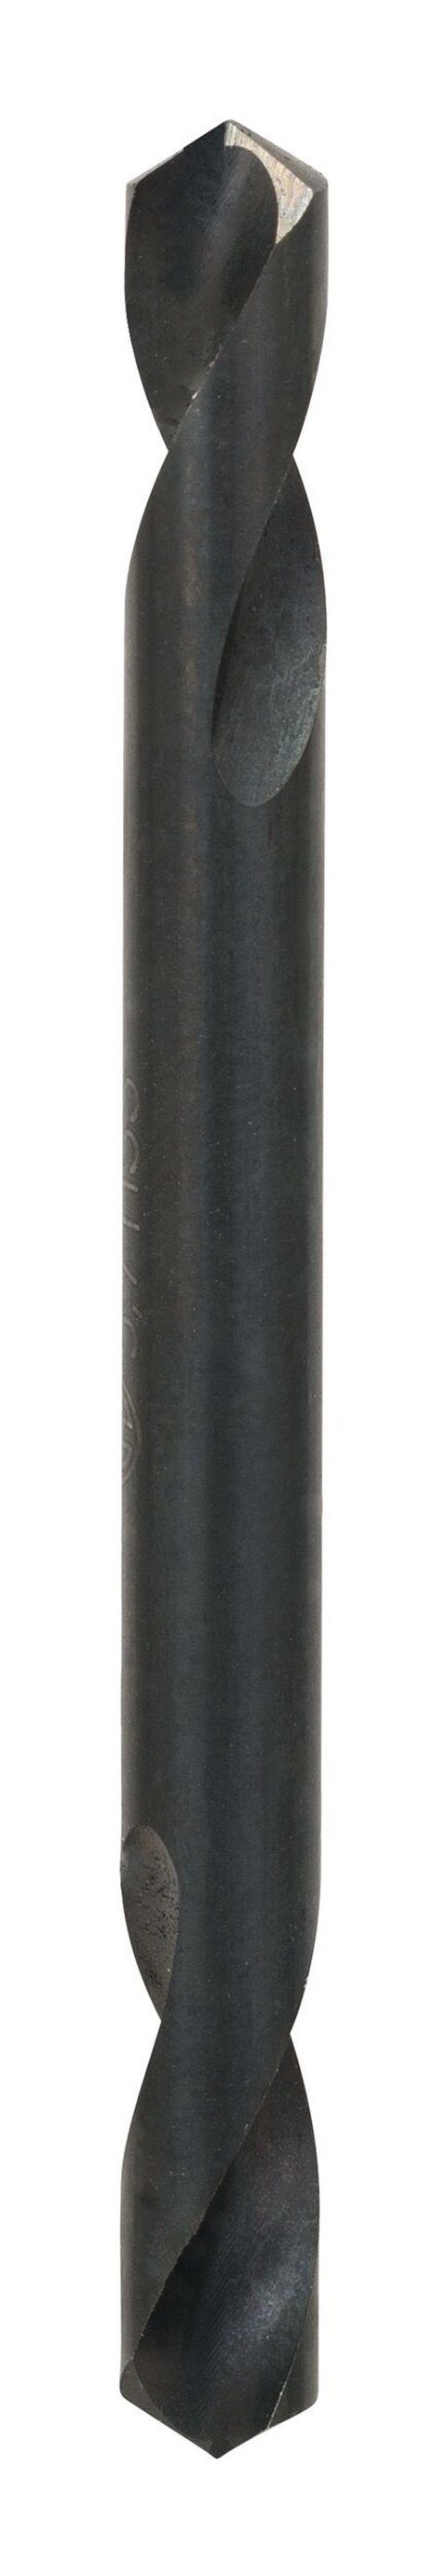 BOSCH Metallbohrer, (10 Stück), HSS-G 66 5,7 mm 10er-Pack - Doppelendbohrer - x 19 x